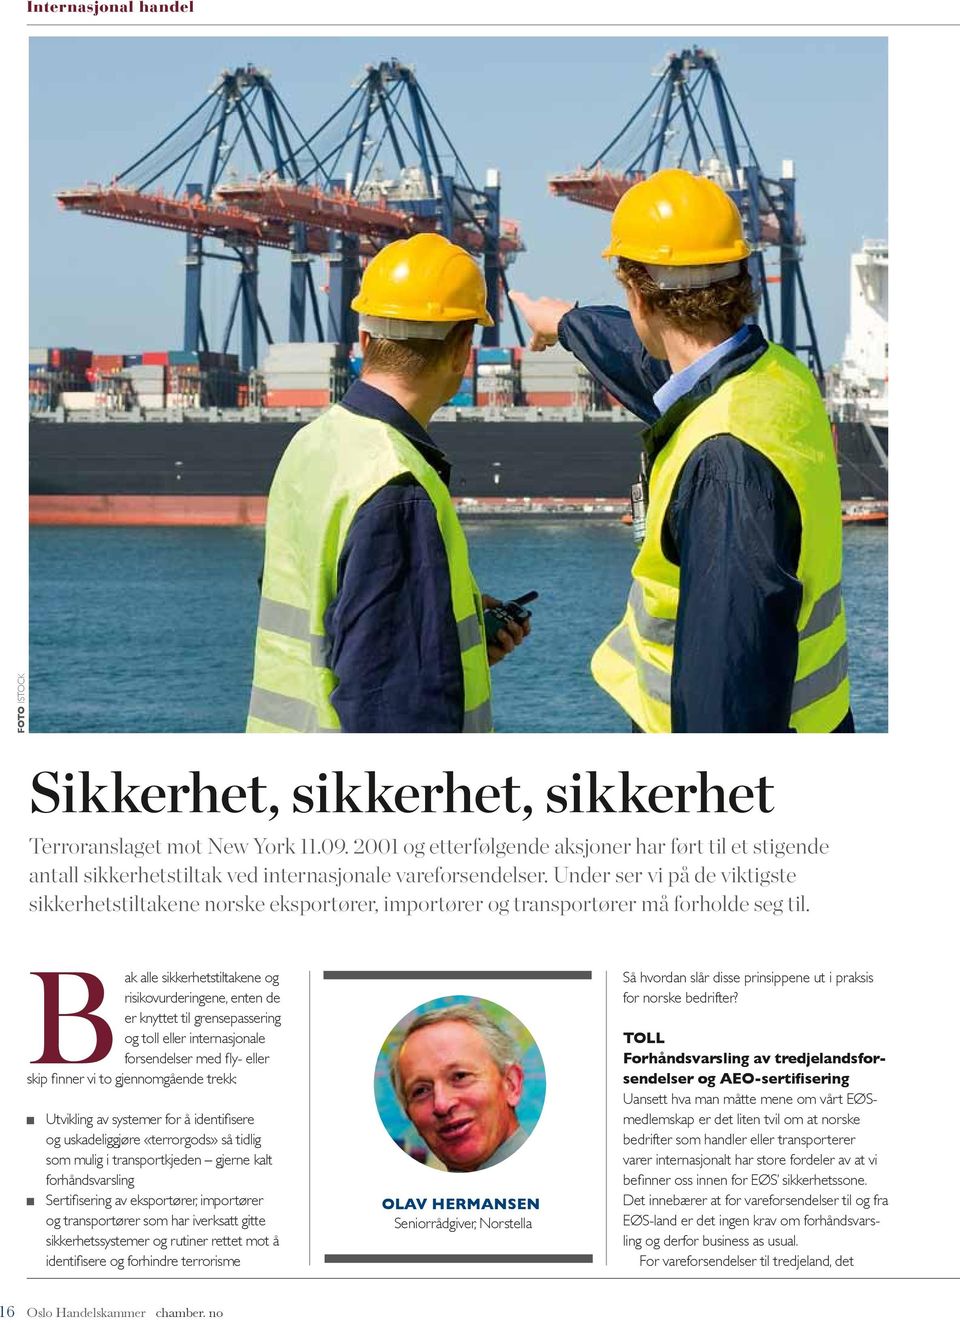 Under ser vi på de viktigste sikkerhets tiltakene norske eksportører, importører og transportører må forholde seg til.